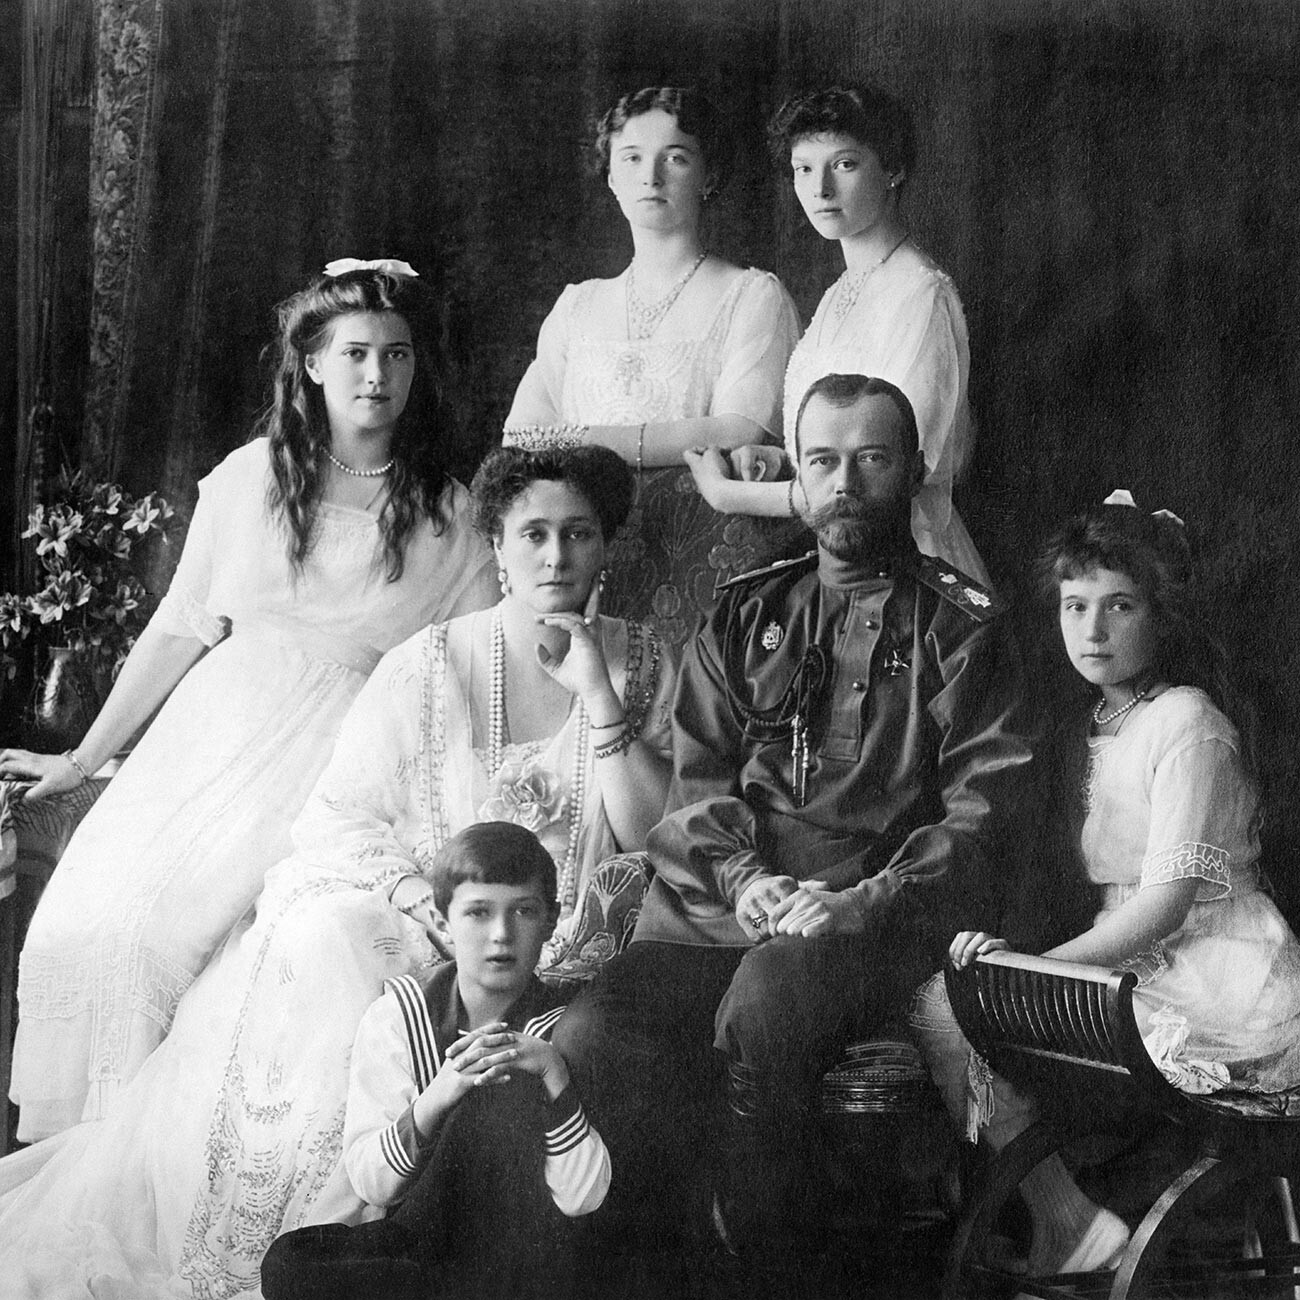 La famiglia imperiale russa nel 1913
